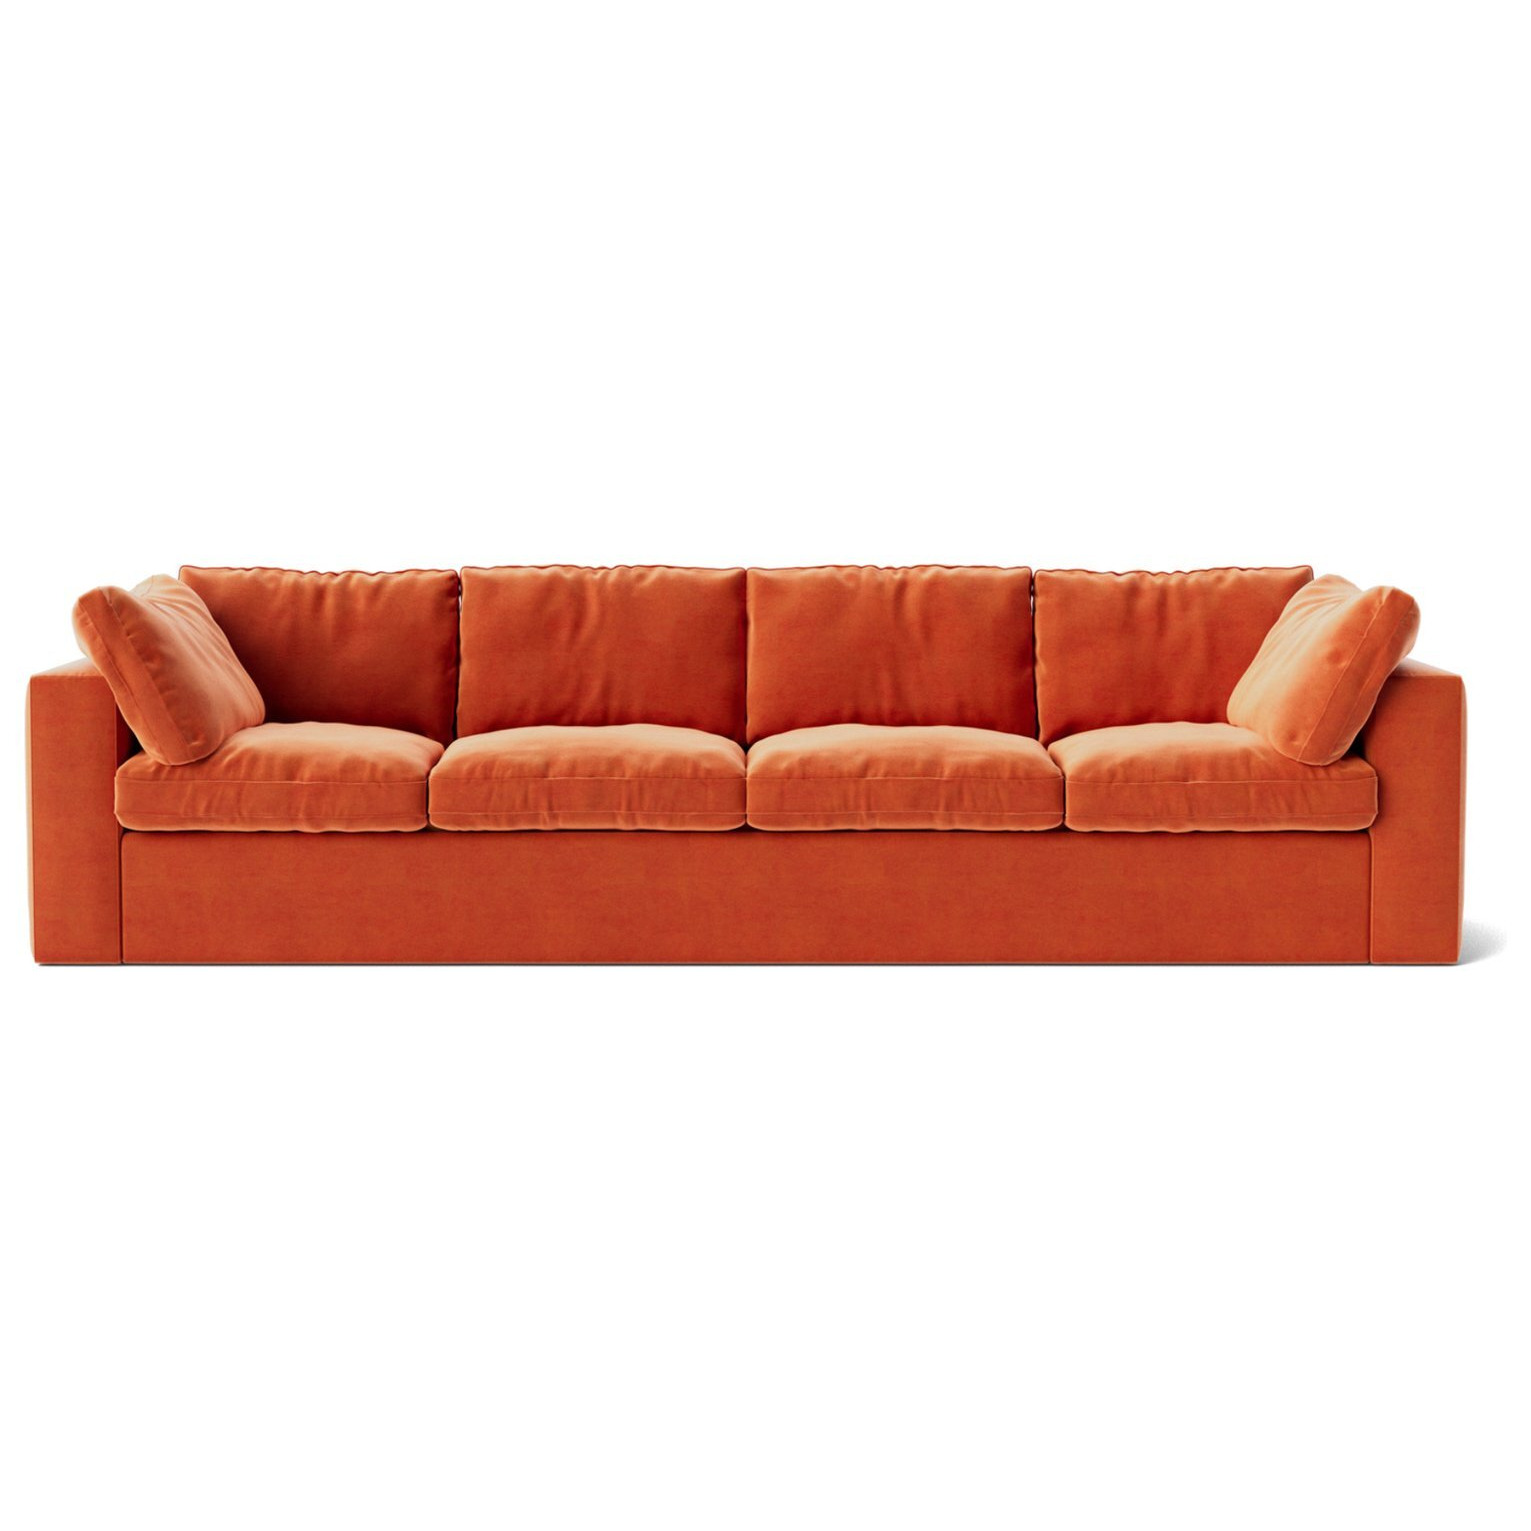 Swoon Seattle Velvet 4 Seater Sofa - Burnt Orange - image 1